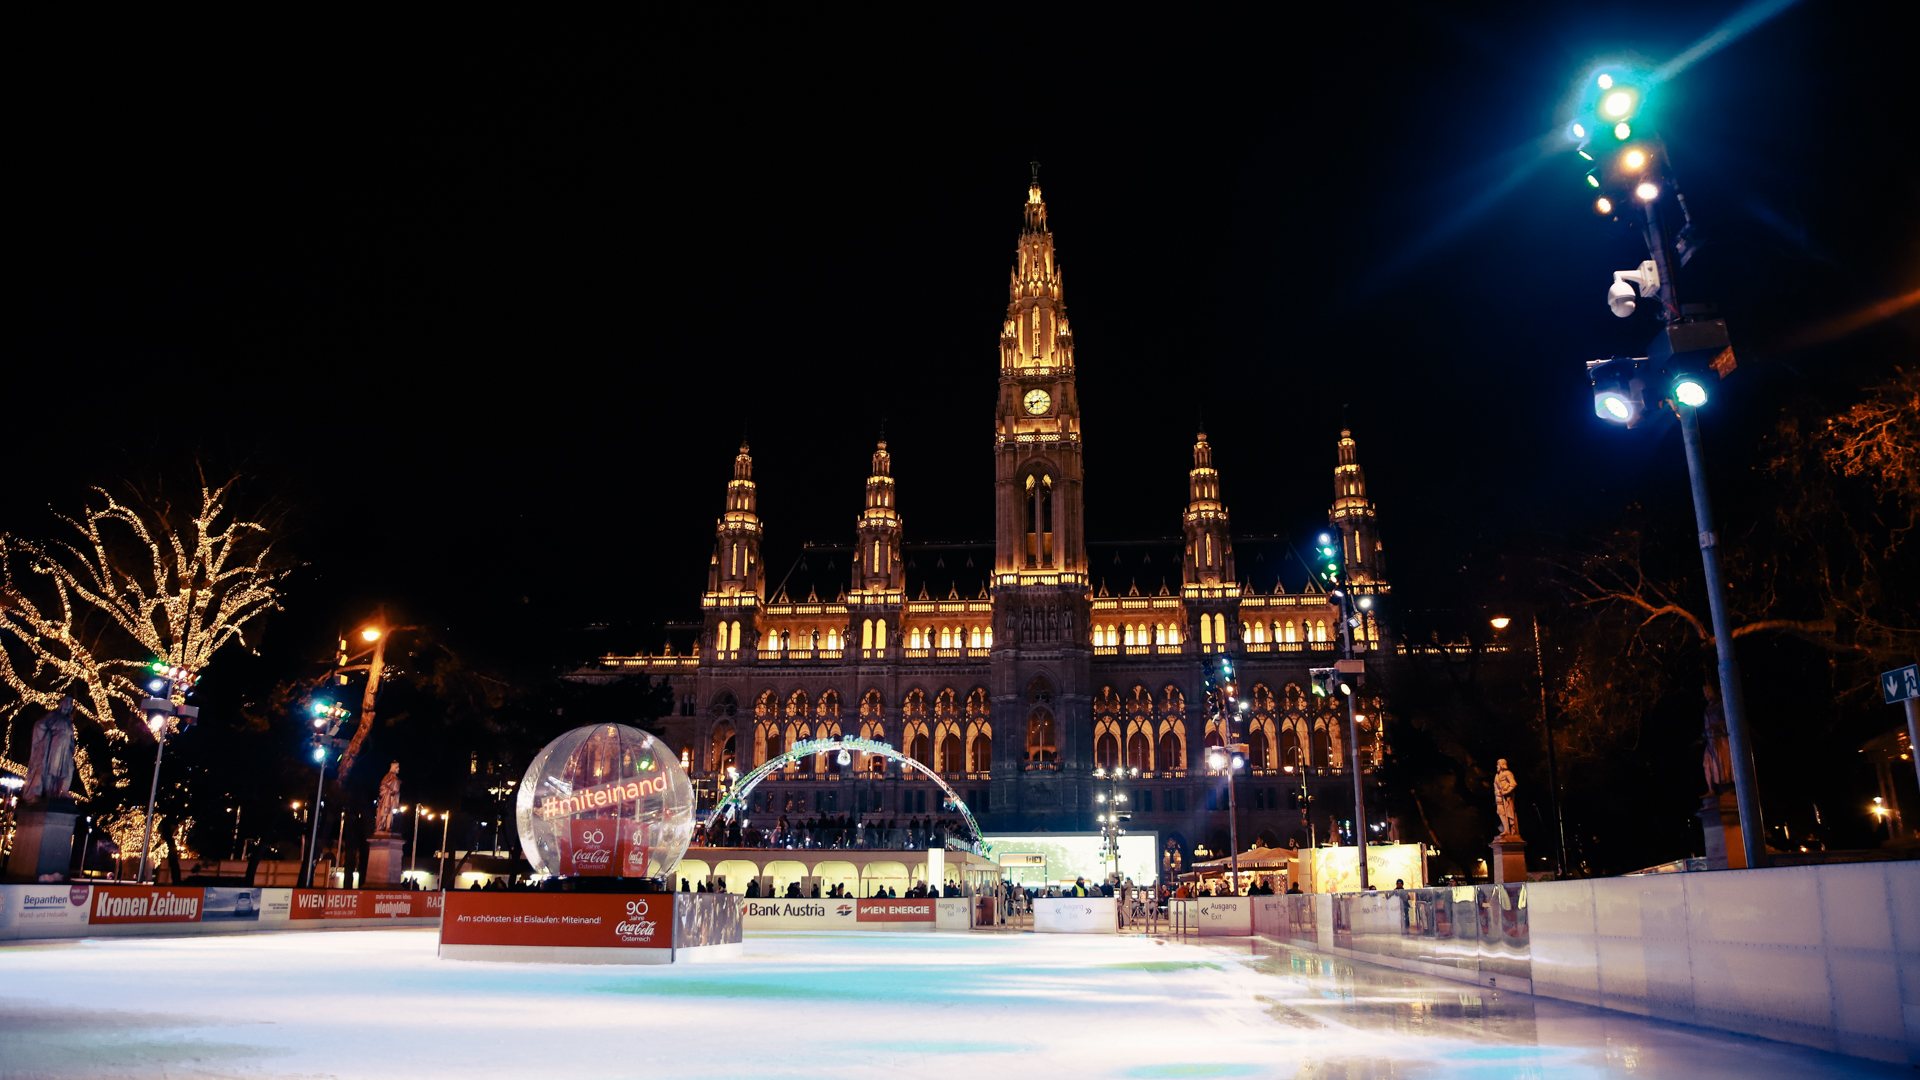 Božićni sajam u Beču ipak otkazan , Bečki ledeni san od 24.12.2020